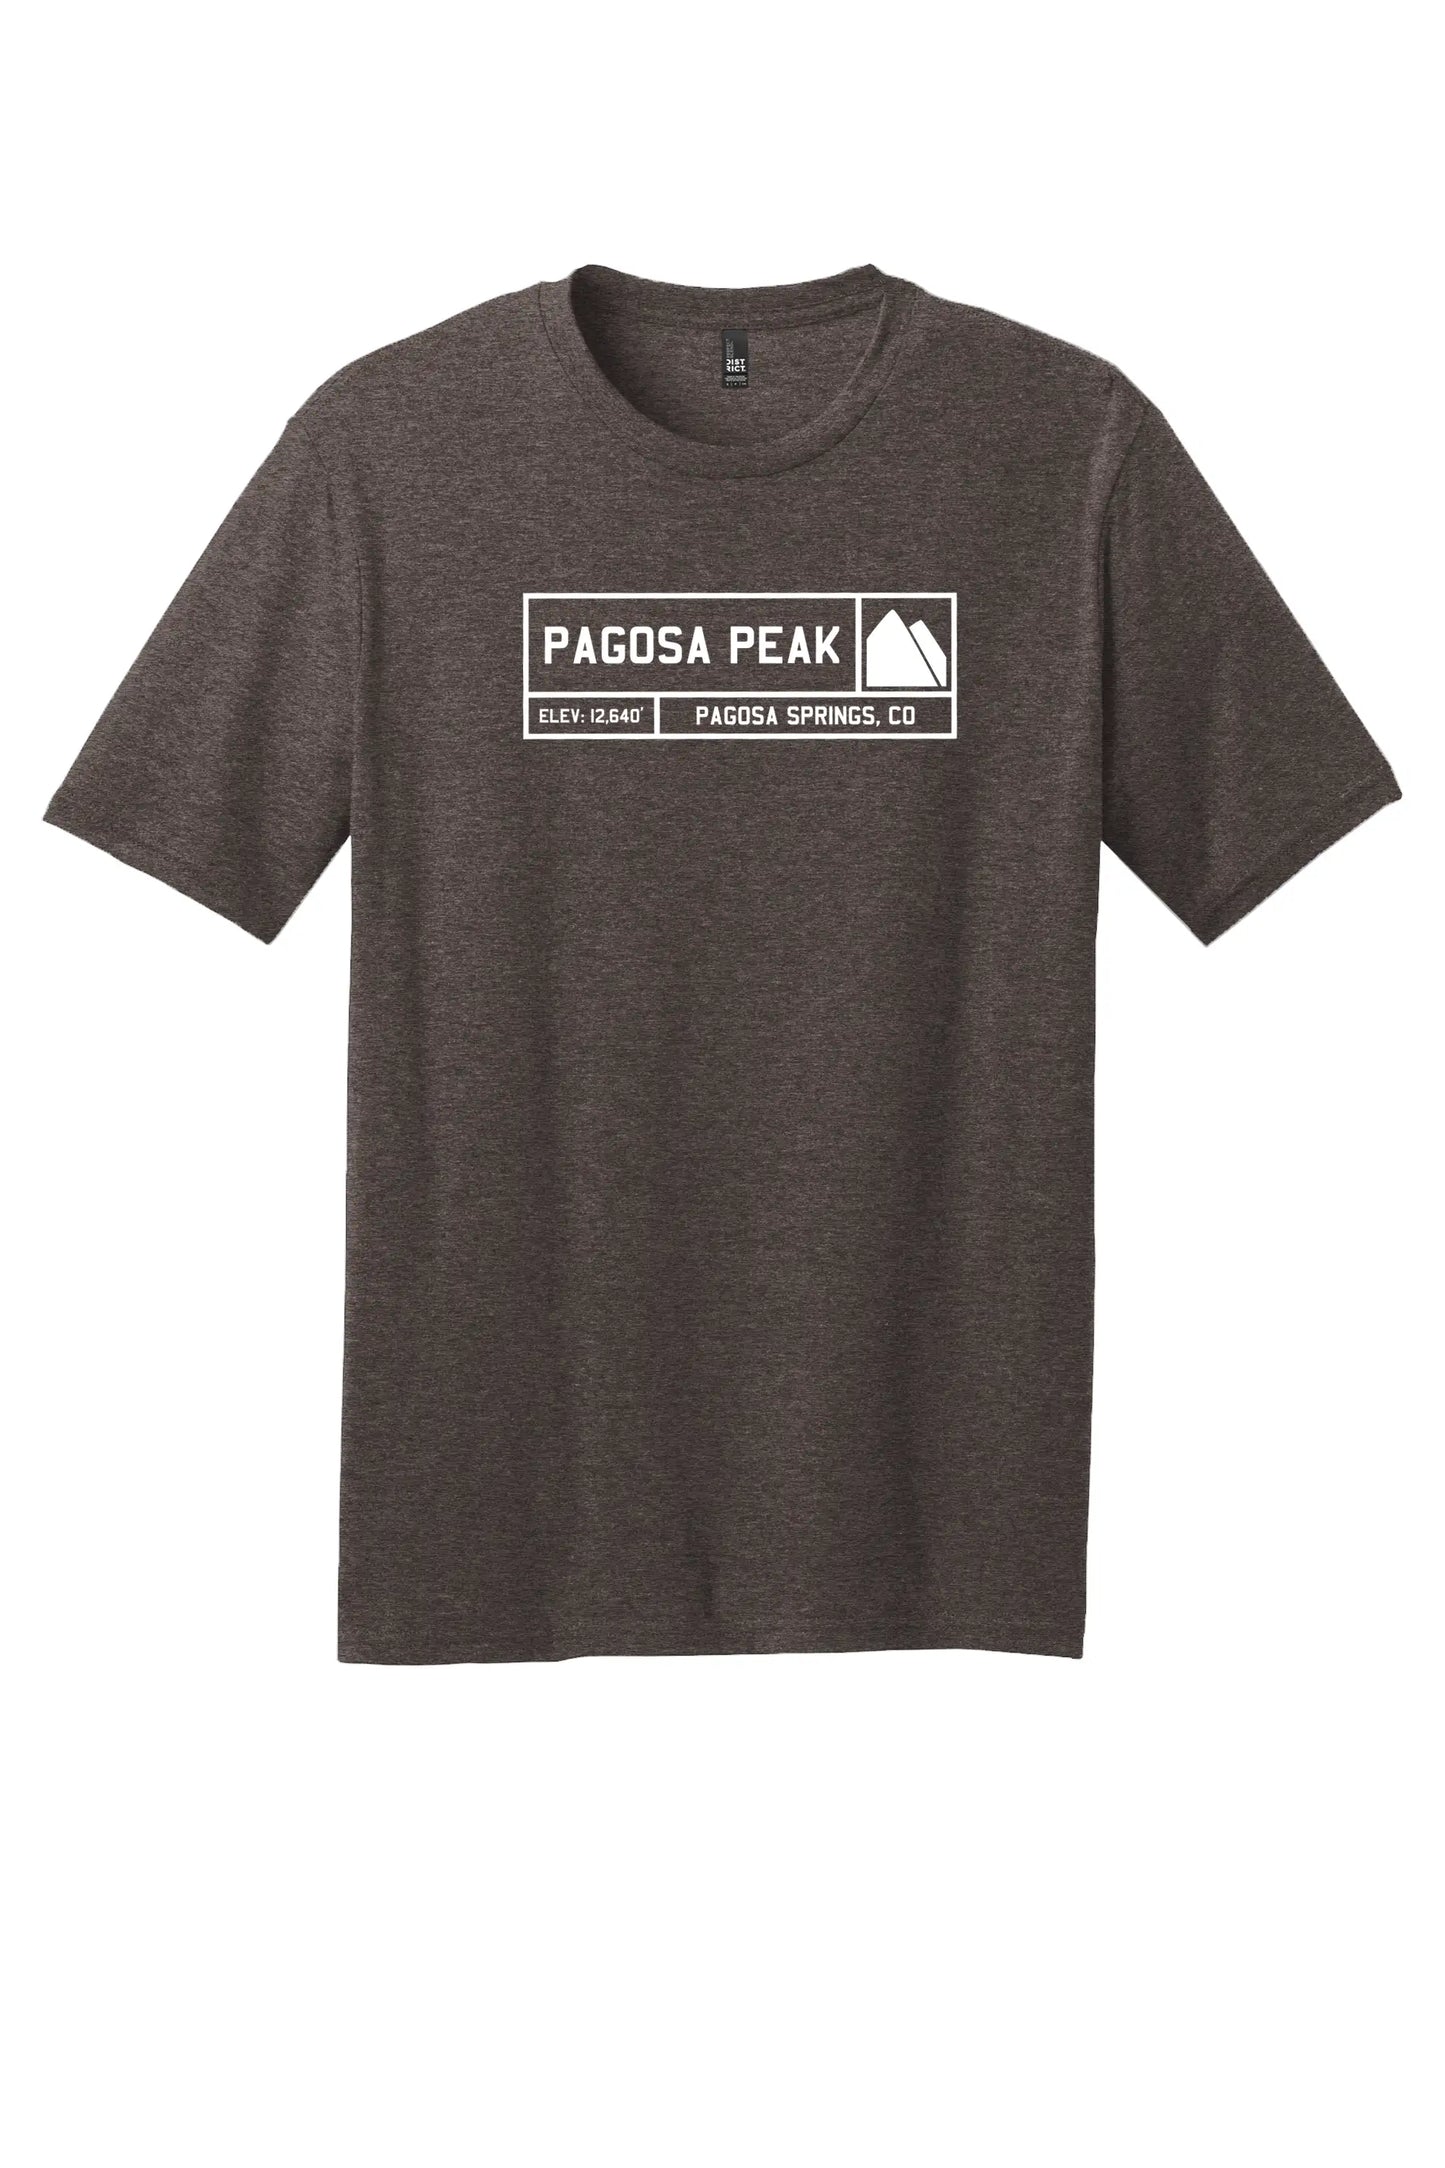 Pagosa Peak Colorado premium graphic tee unisex